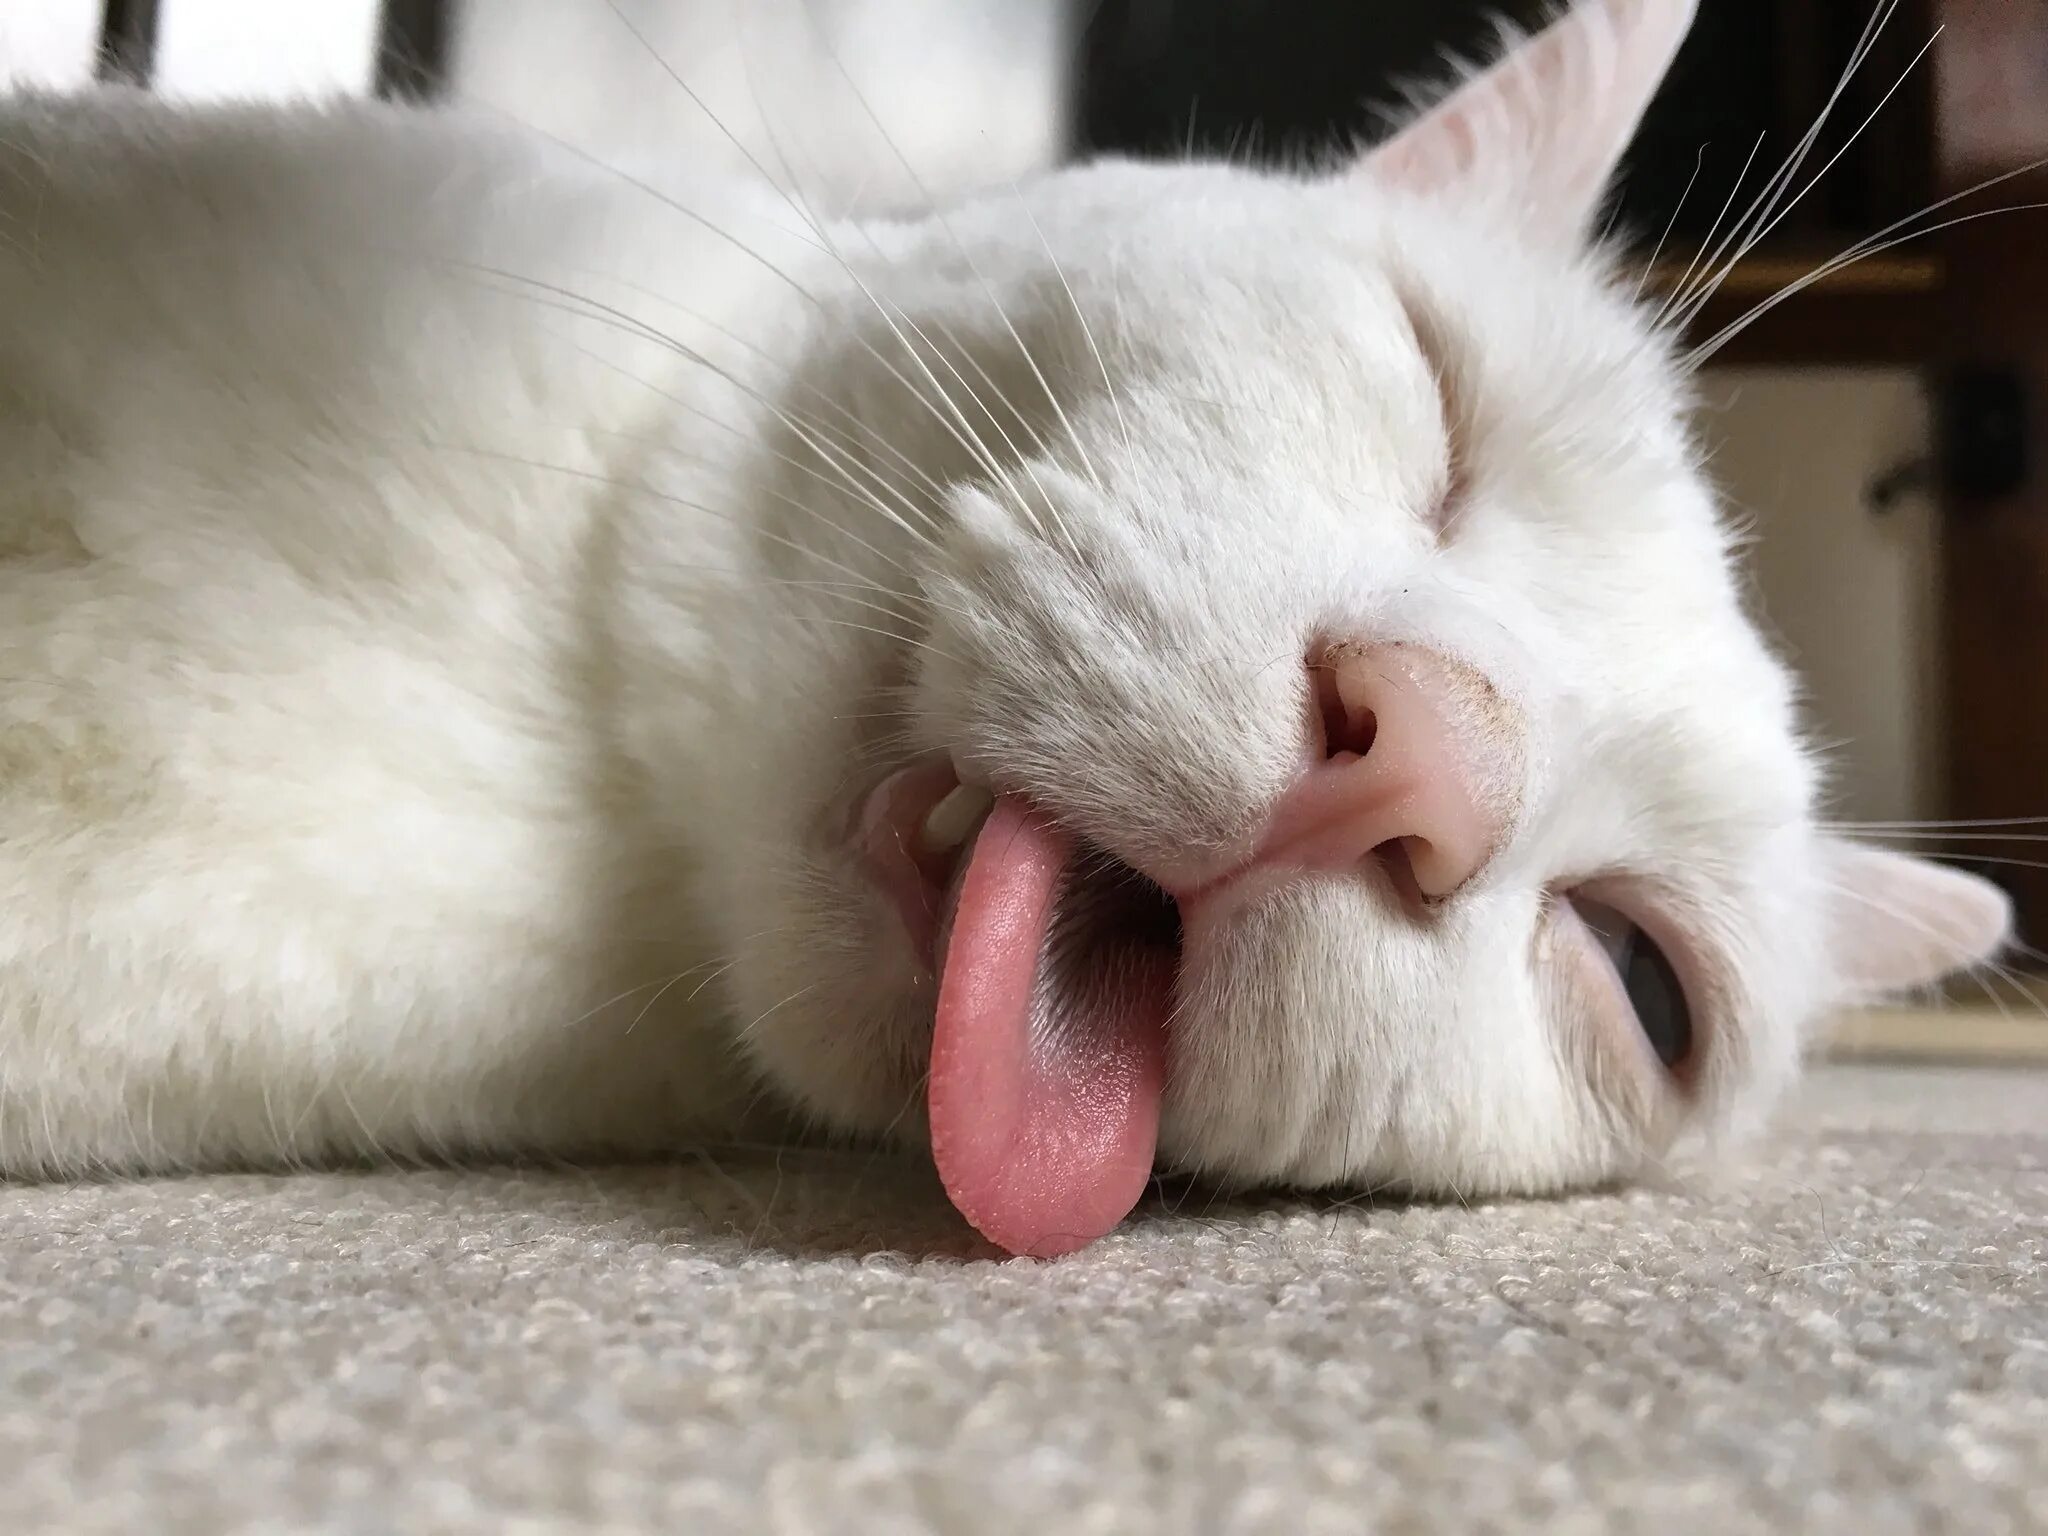 Кошка с высунутым языком. Спящий кот. Белая кошка с высунутым языком. Спящий кот с высунутым языком. Свесив набок длинный розовый язык